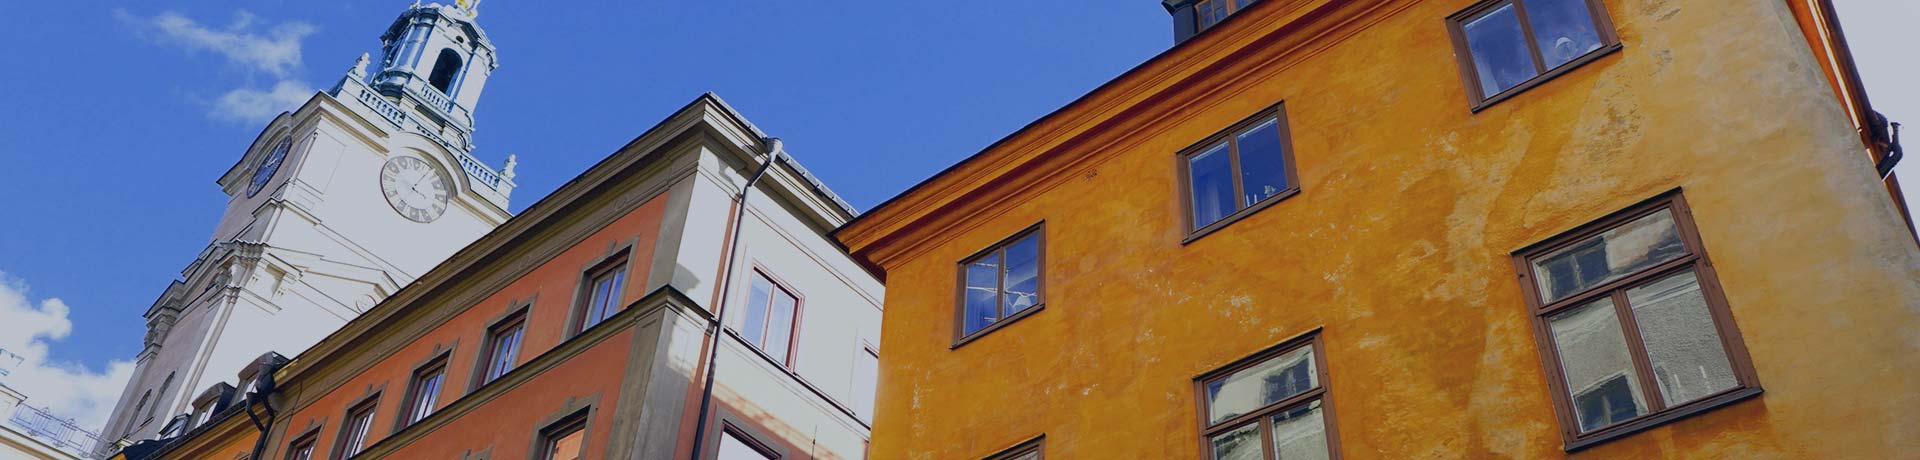 Các tòa nhà ở Stockholm